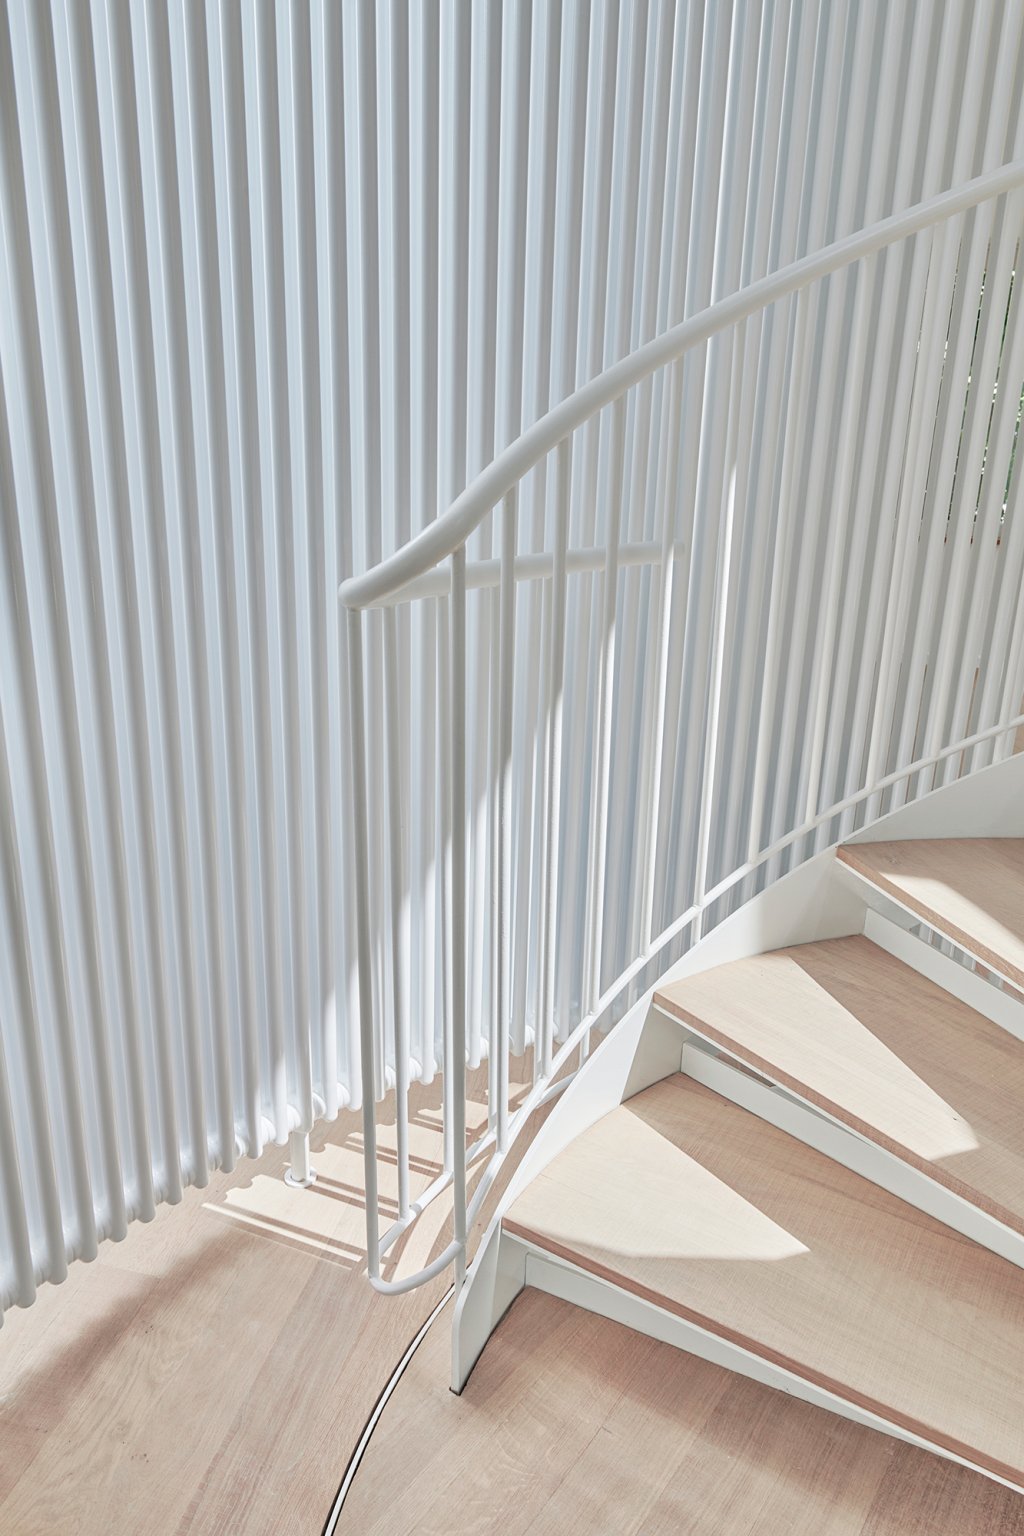 Hilbert Architektur Truwant Rodet Projekt Falkenstrasse Spiral Stairs, Round heating